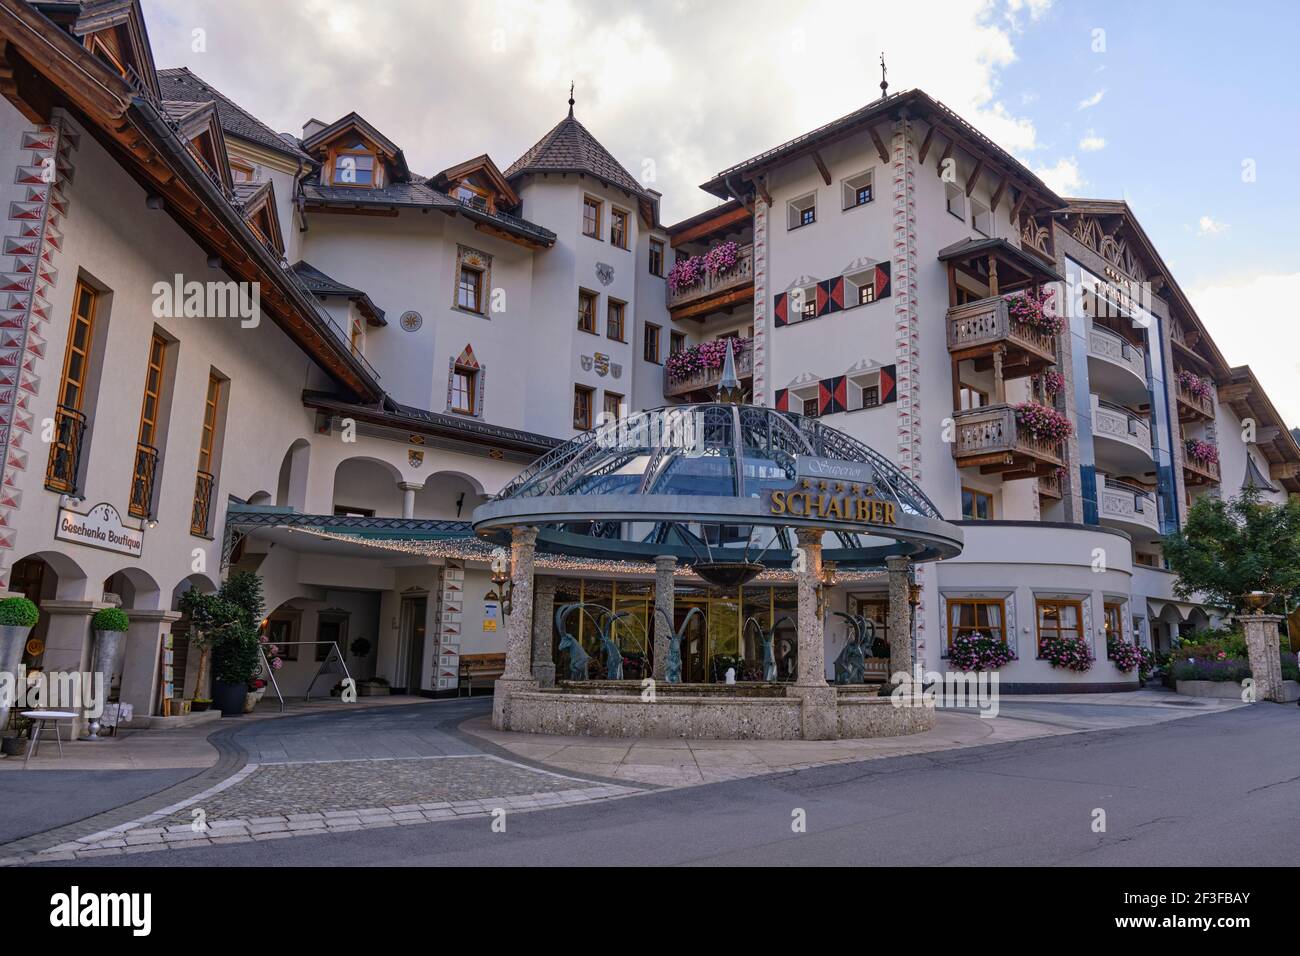 Schalber hotel in Austrian mountain village Serfaus. Tirol, Austria -  August 24, 2020 Stock Photo - Alamy